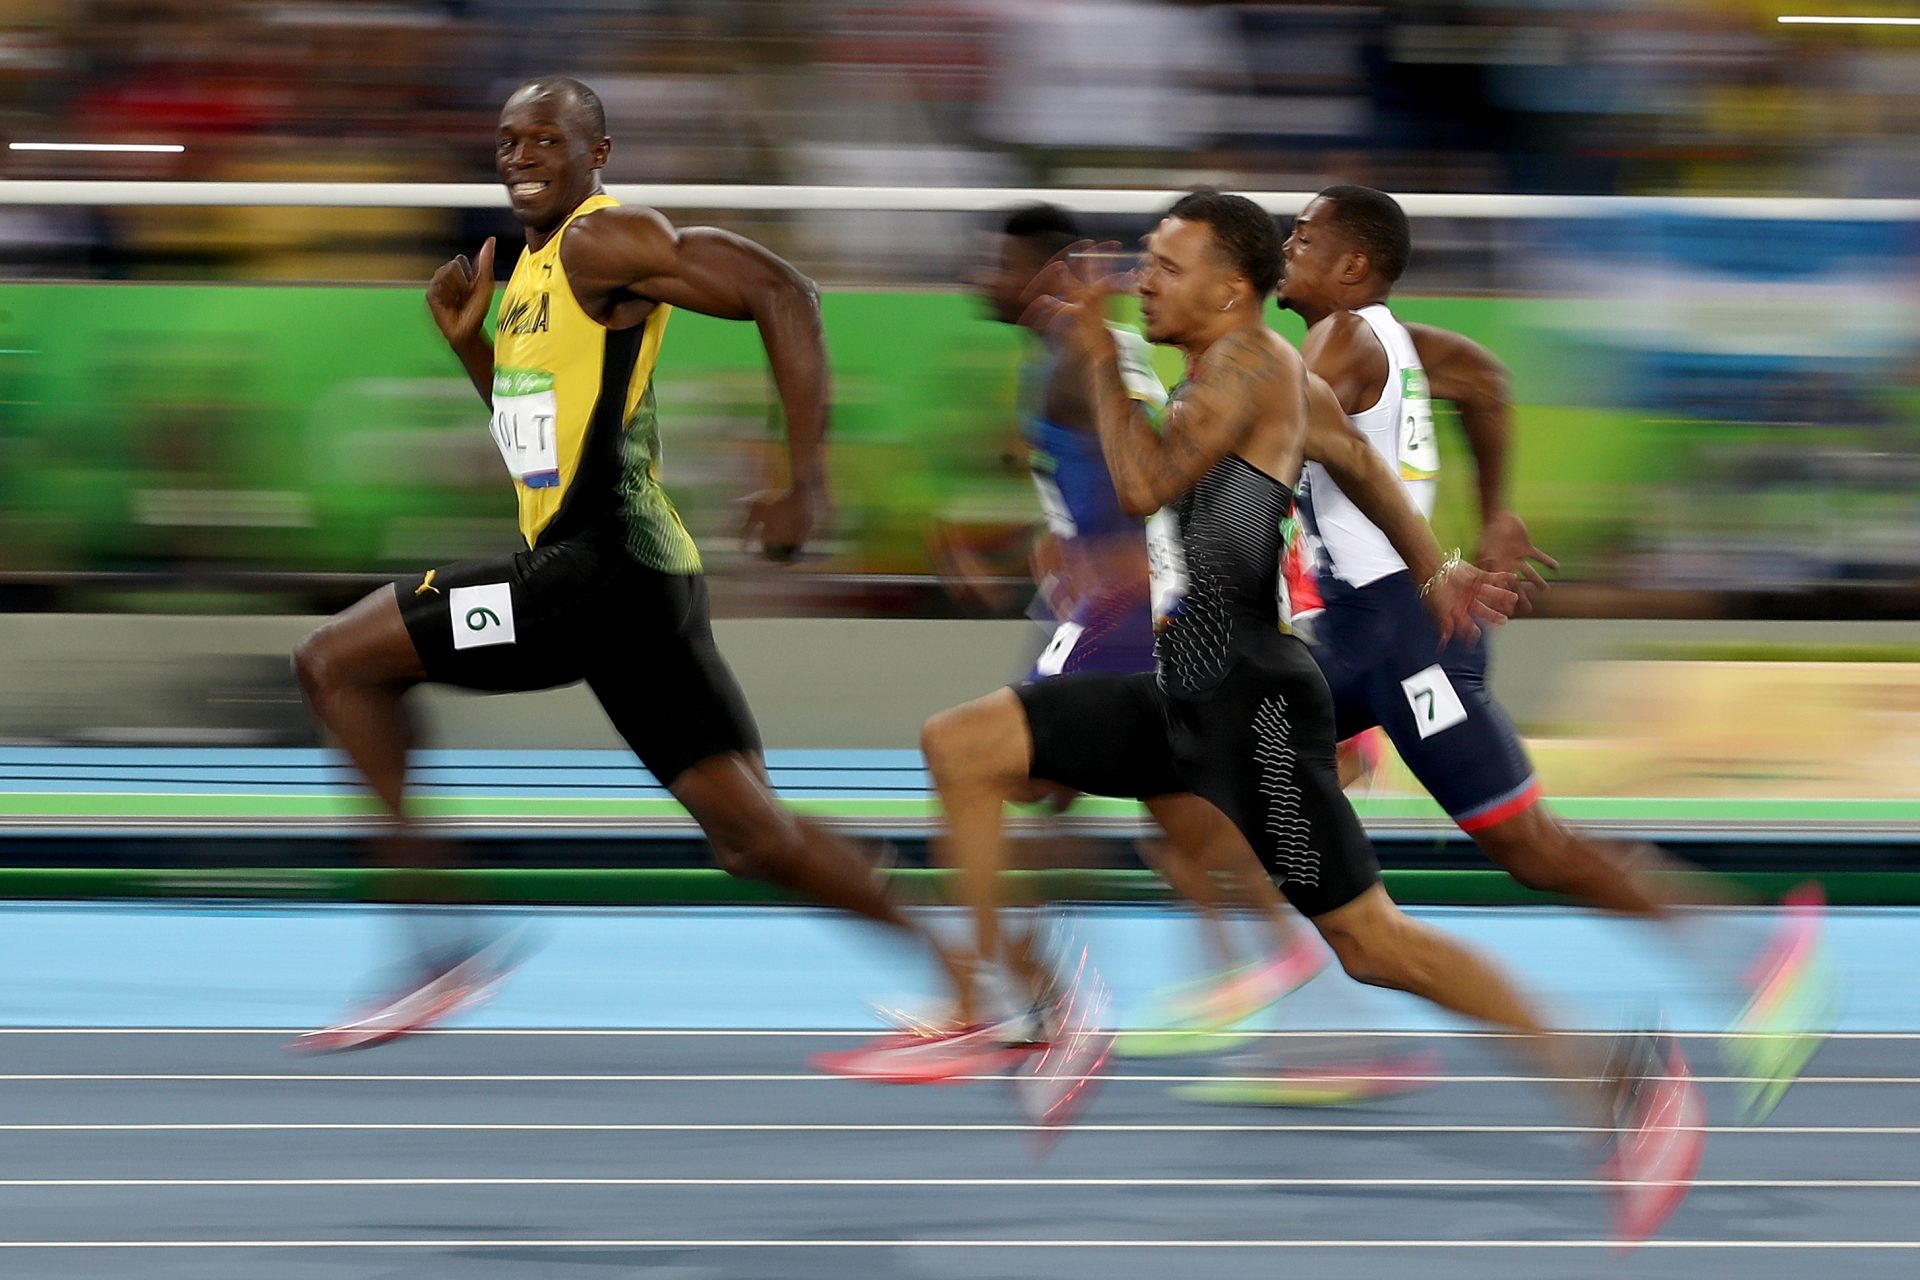 Berjaya Padam Rekod Dunia Usain Bolt Seketika, Noah Lyles Luah Rasa Kecewa